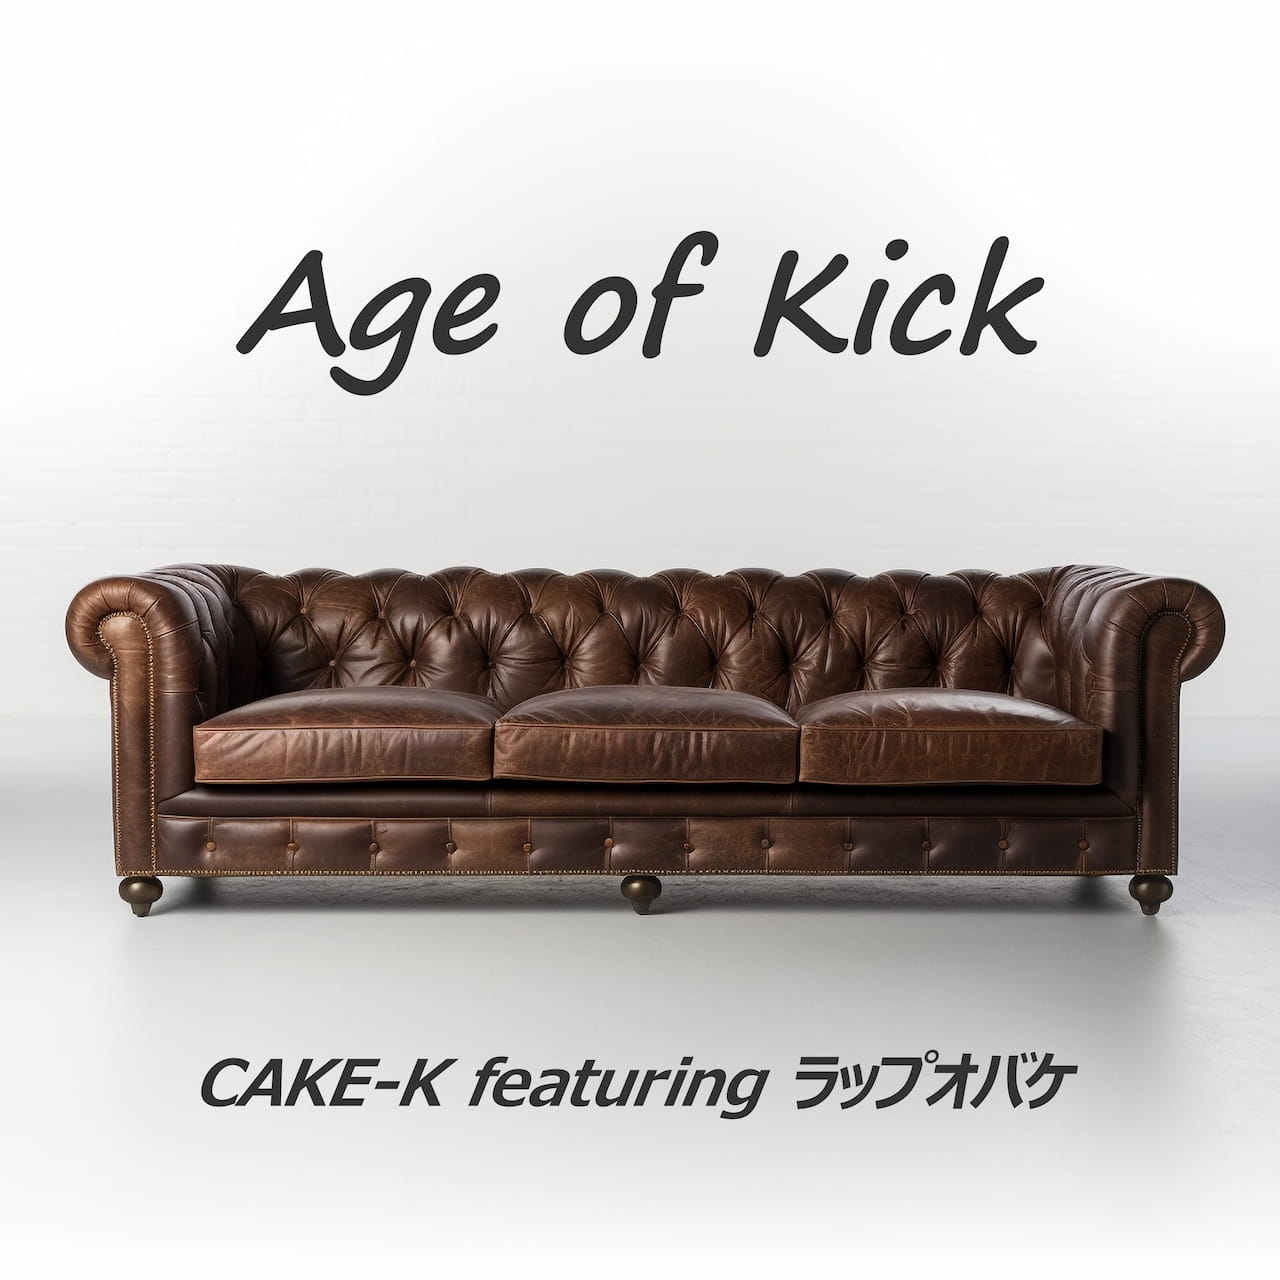 Age of kick (feat. ラップオバケ)